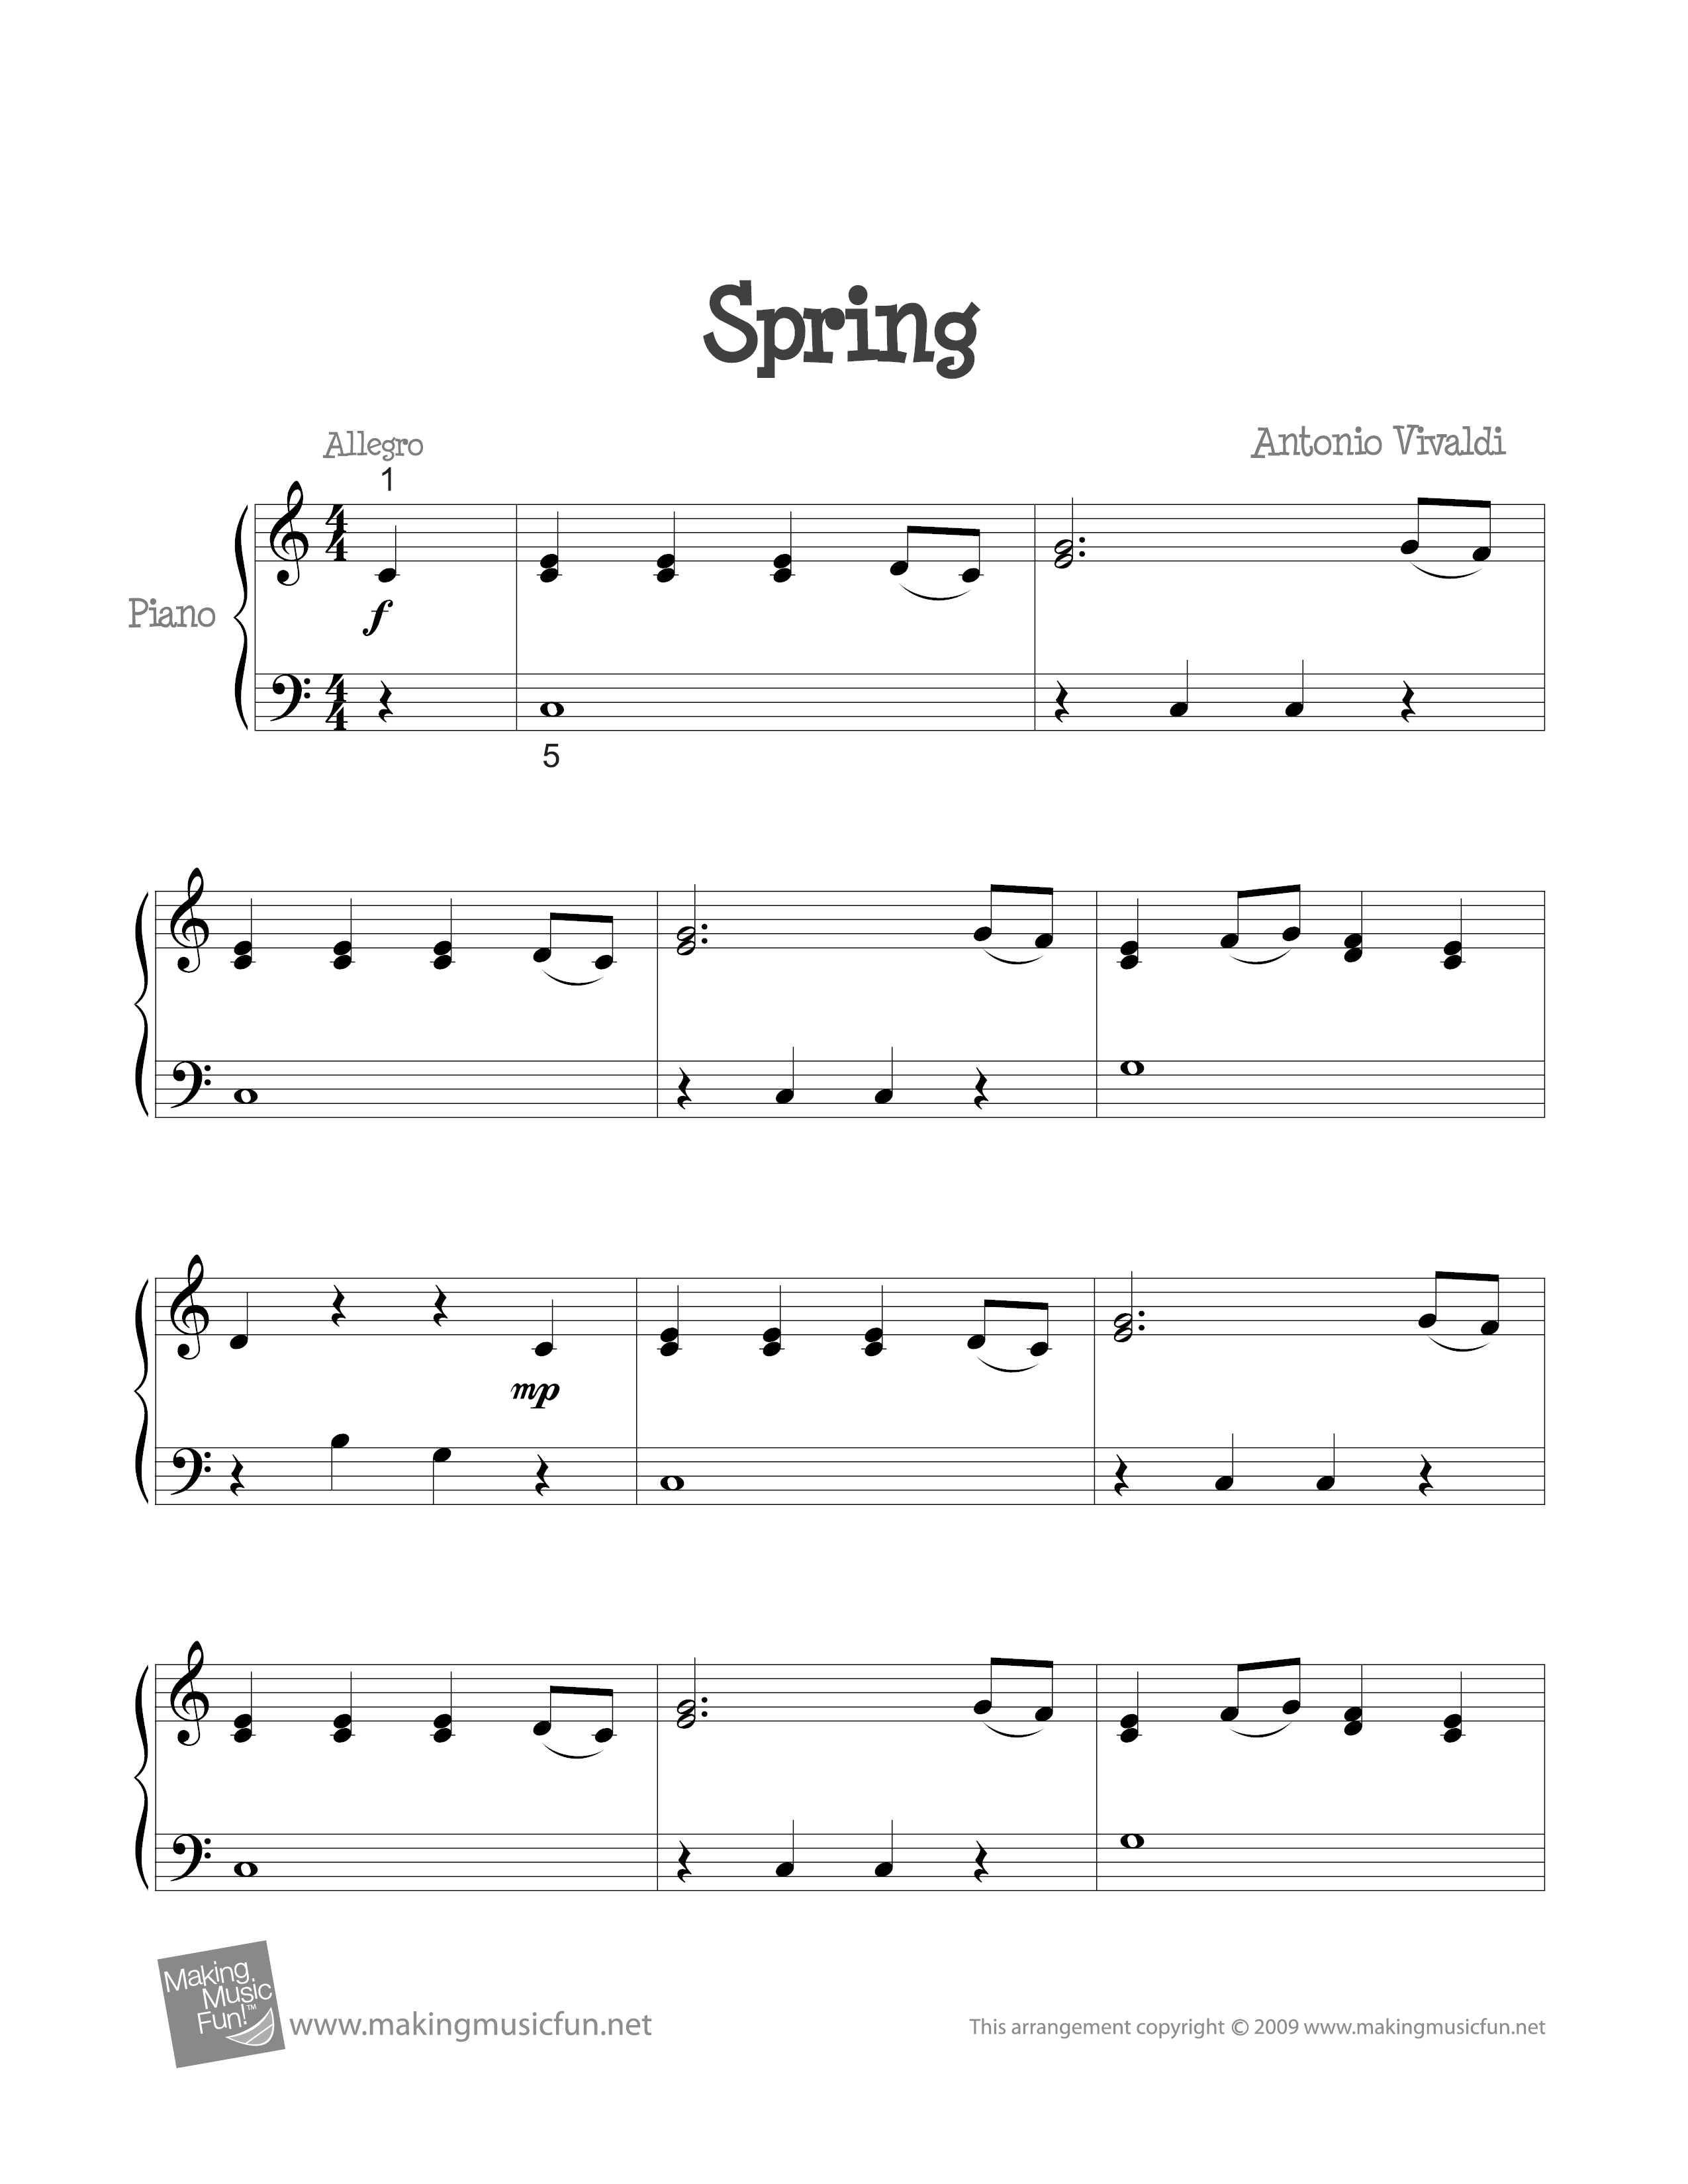 The Four Seasons - Spring in E Major, RV. 269: I. Allegro琴谱